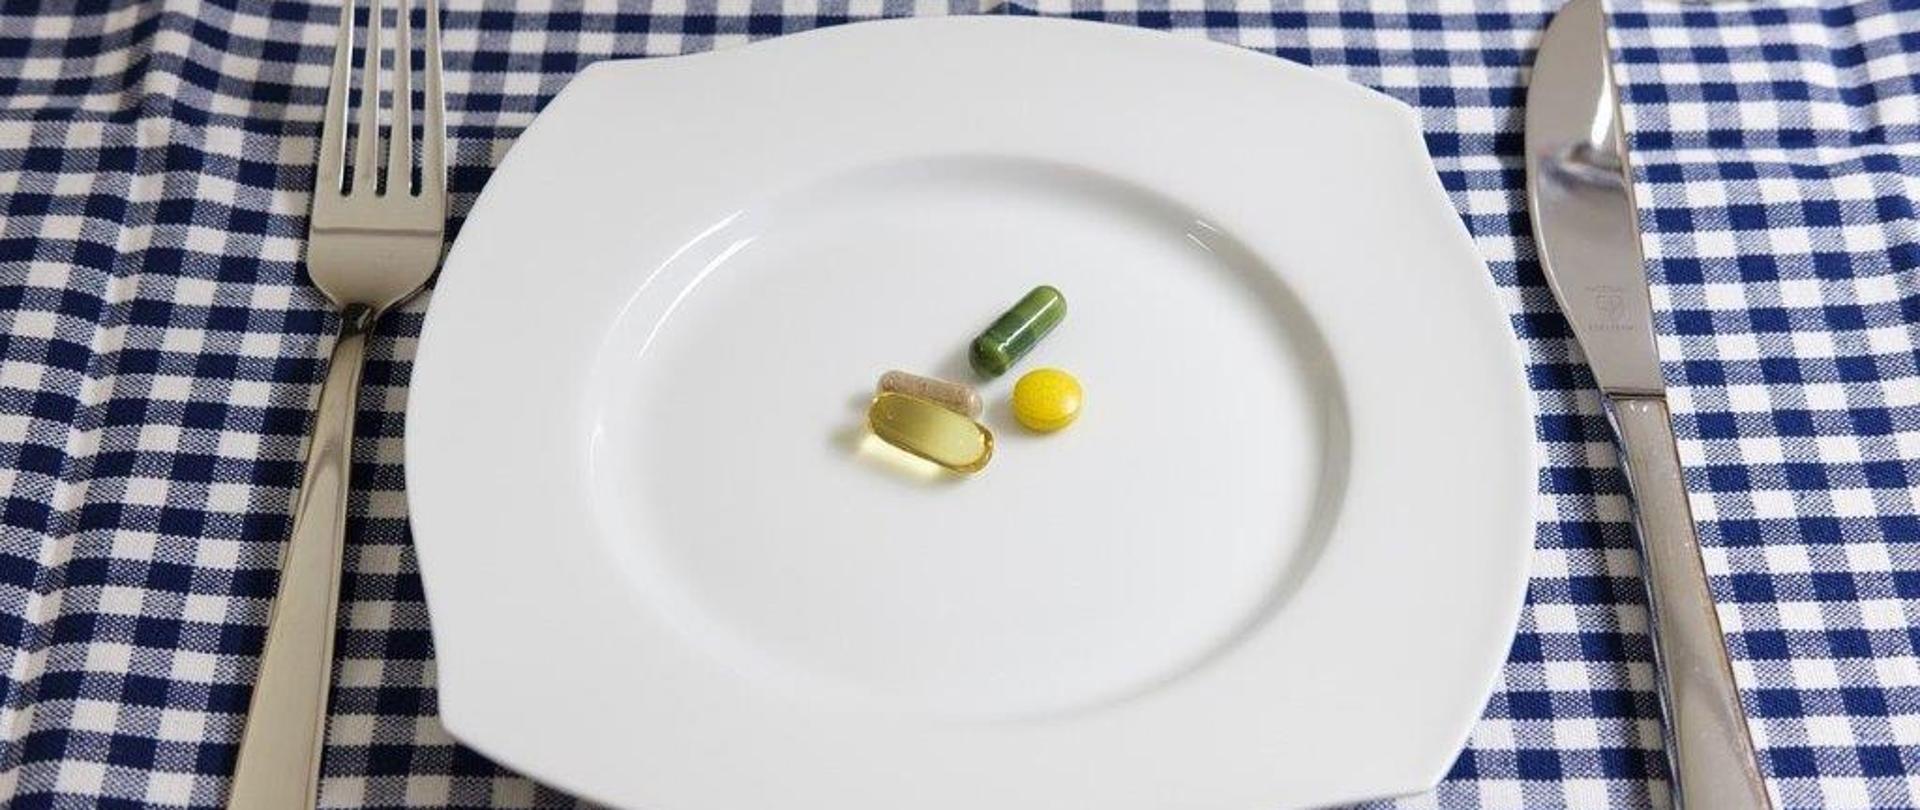 Suplementy diety w postaci tabletek i kapsułek na talerzu.